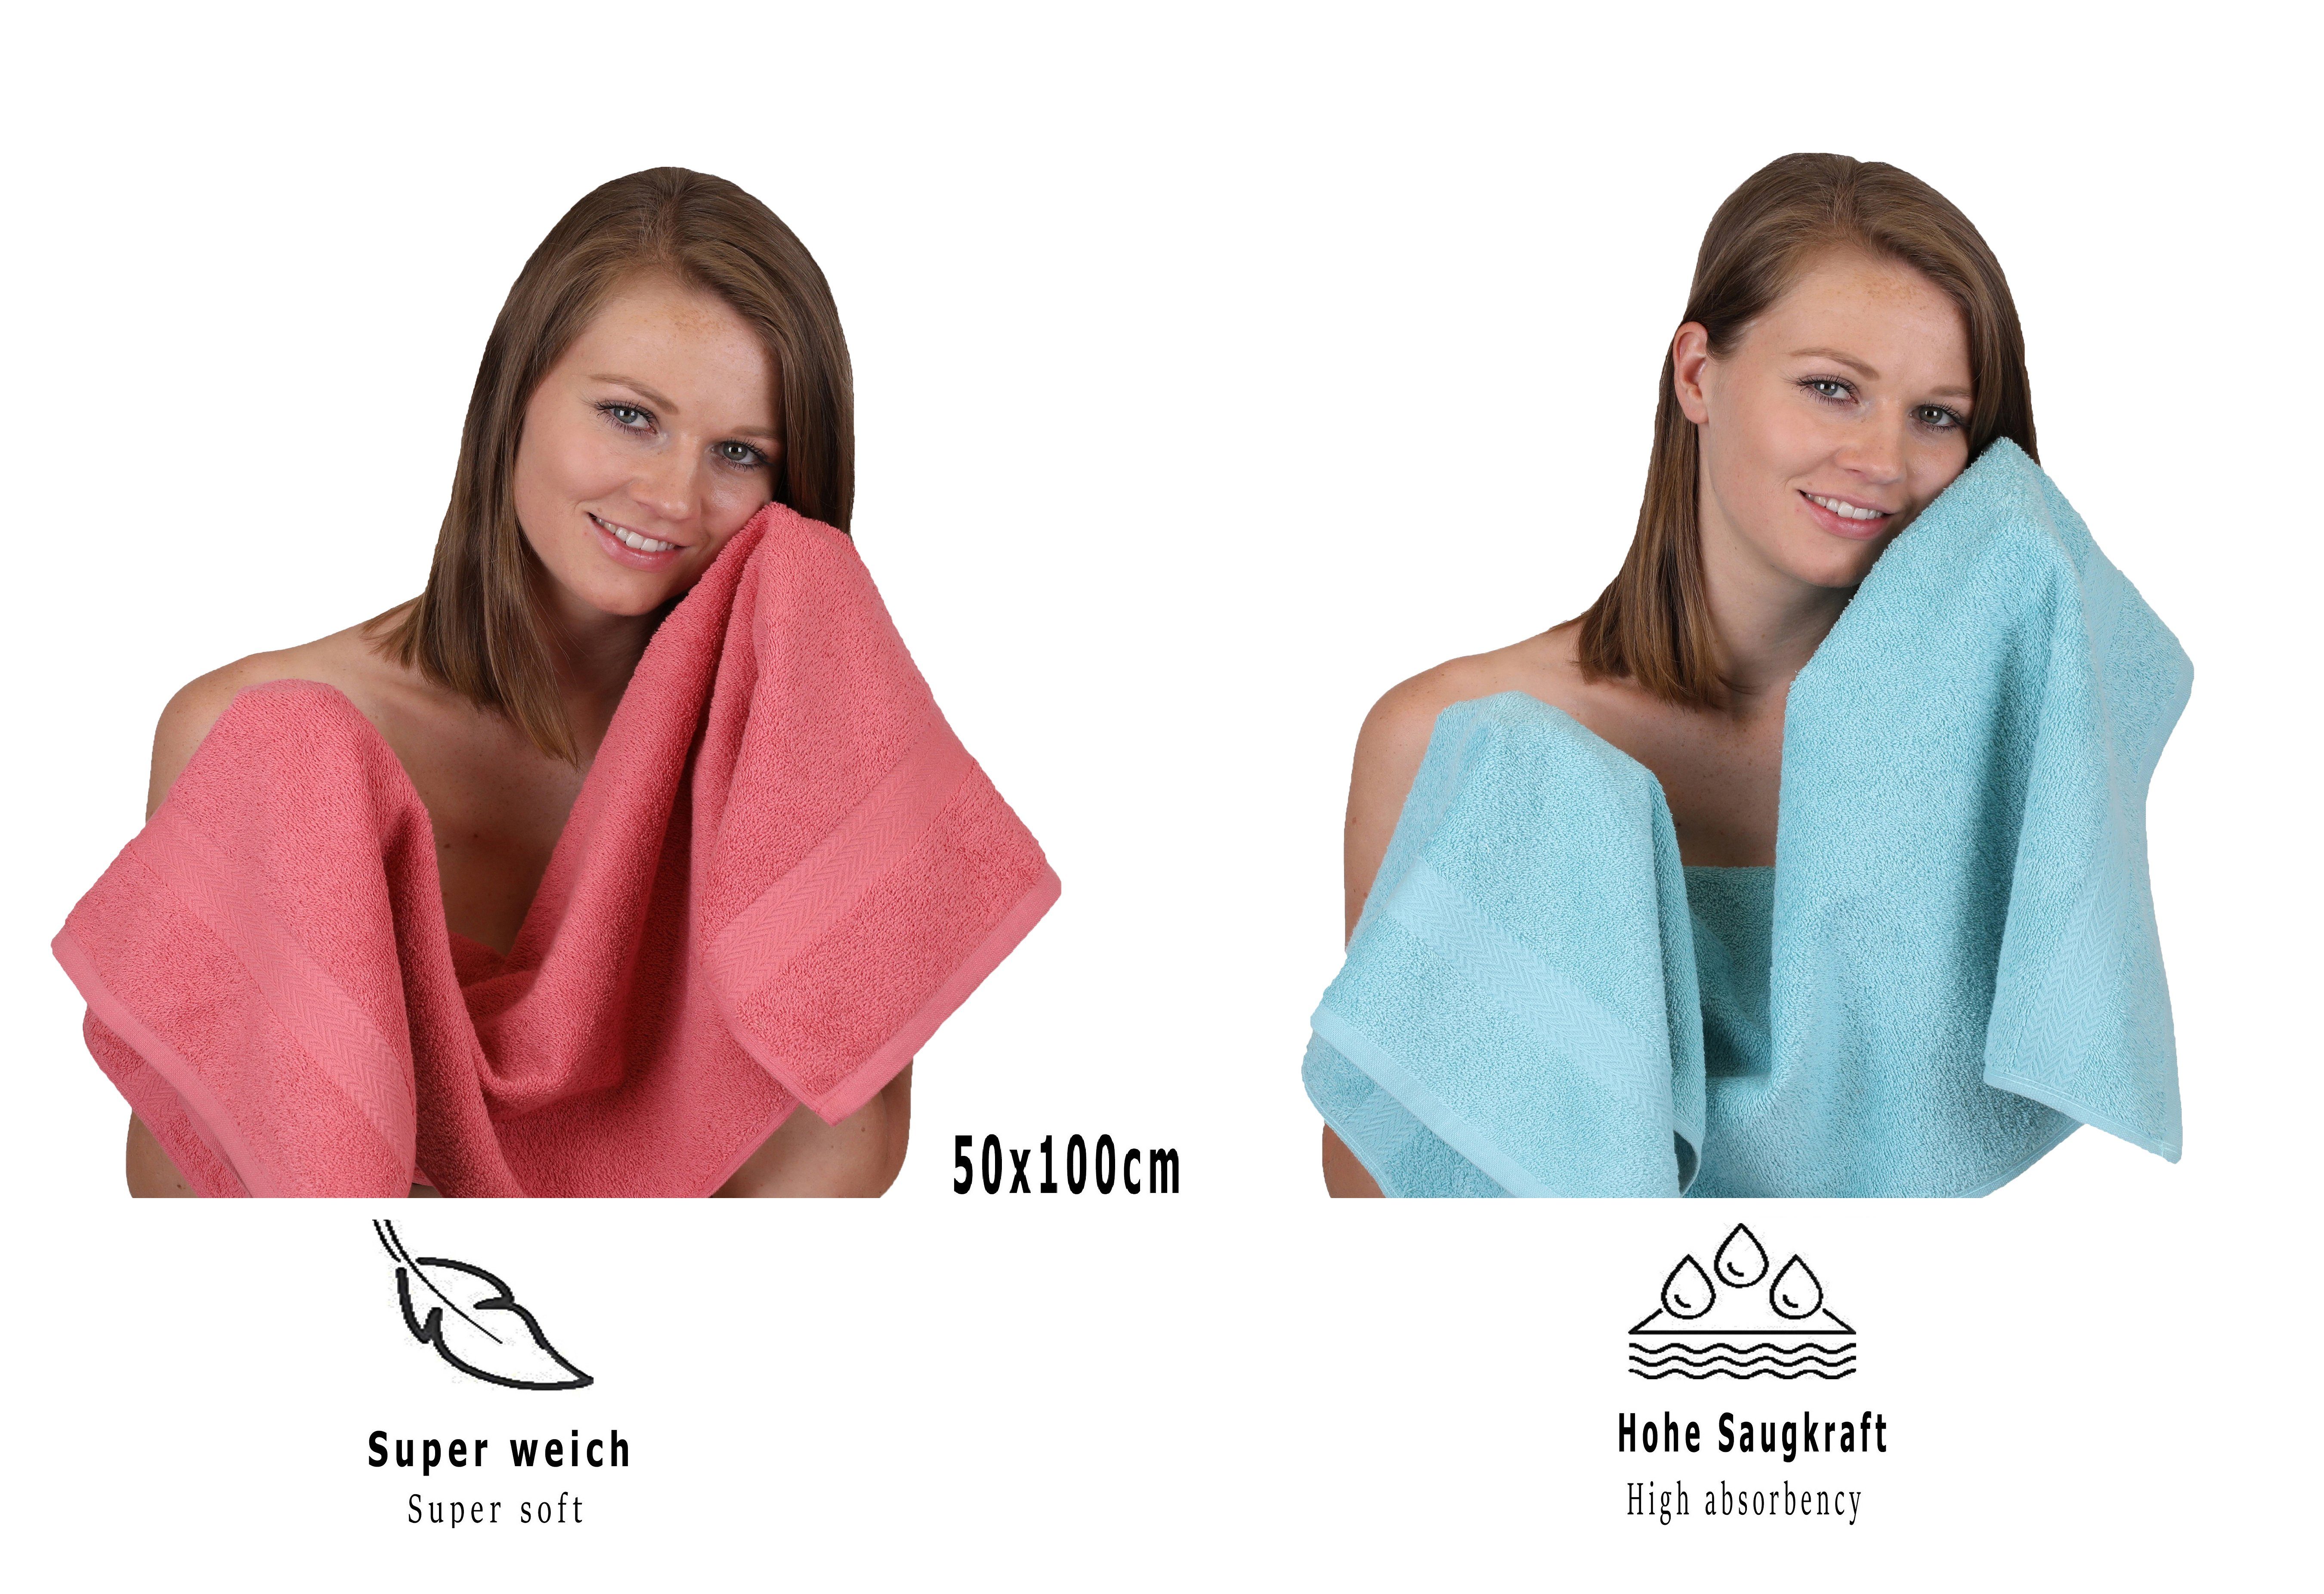 Baumwolle, Premium Himbeere/Ocean, 12-TLG. (12-tlg) Handtuch Handtuch Set Betz Set